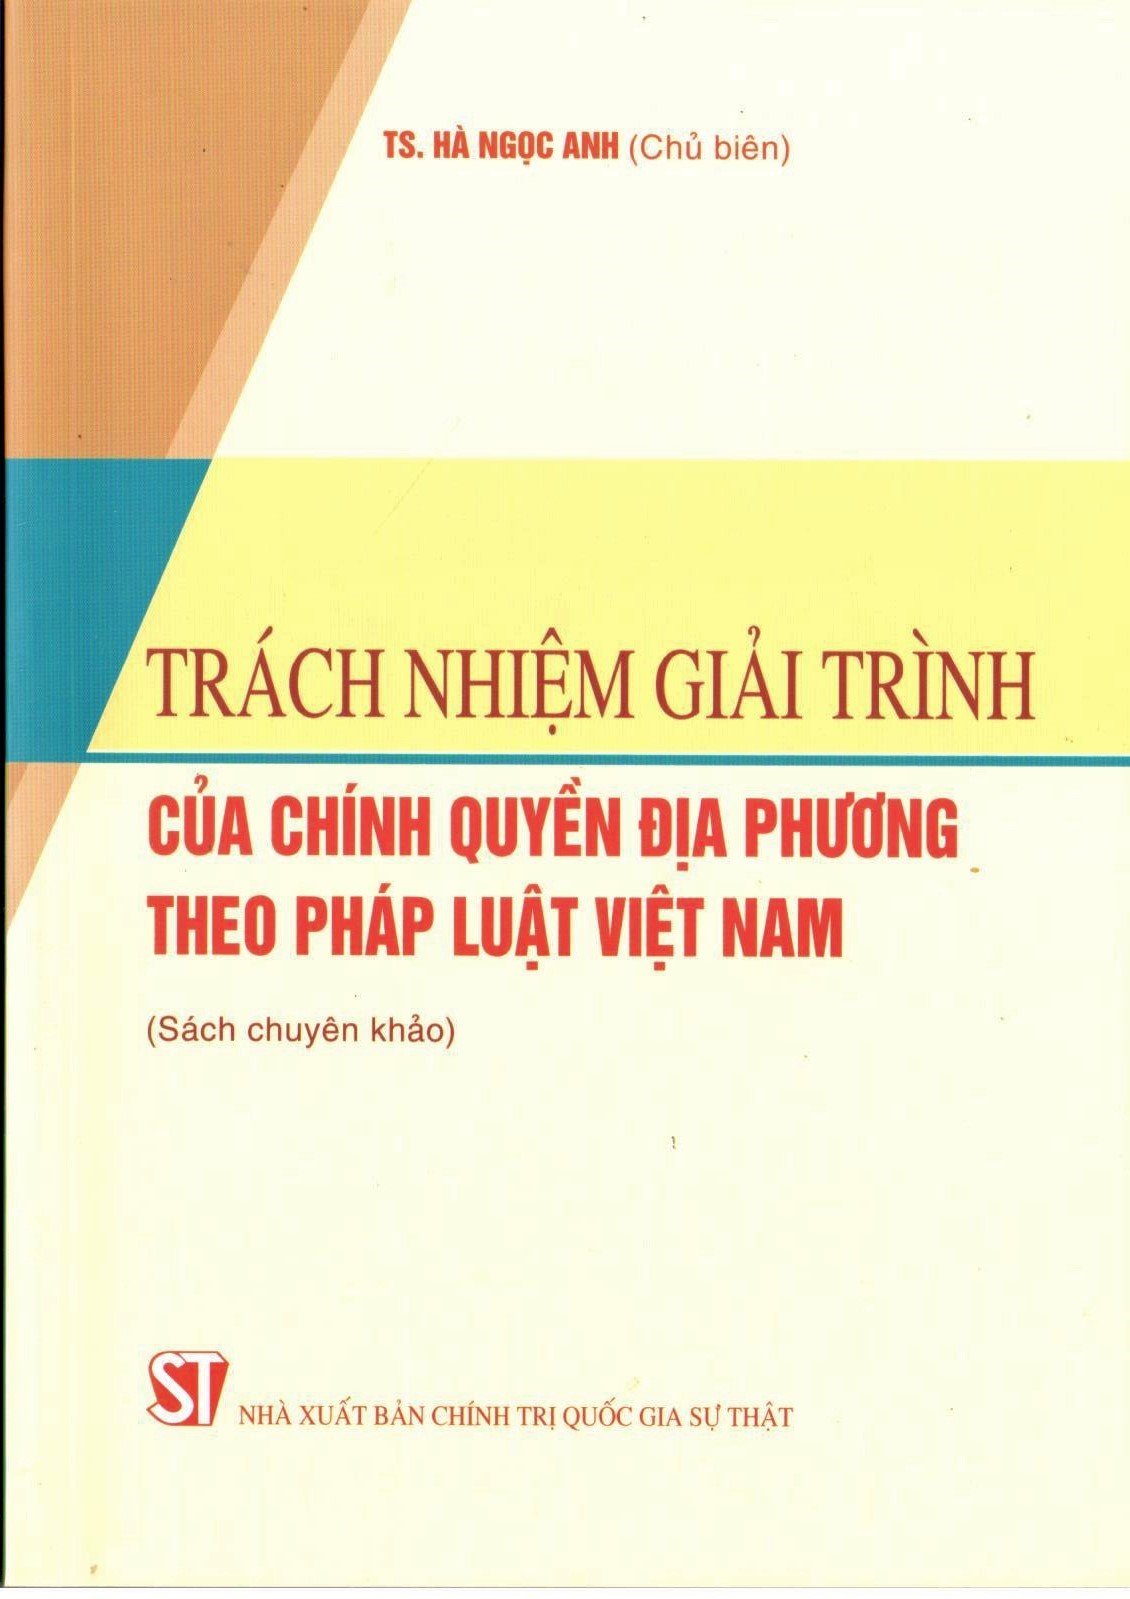 Trách nhiệm giải trình của chính quyền địa phương theo pháp luật Việt Nam (Sách chuyên khảo)